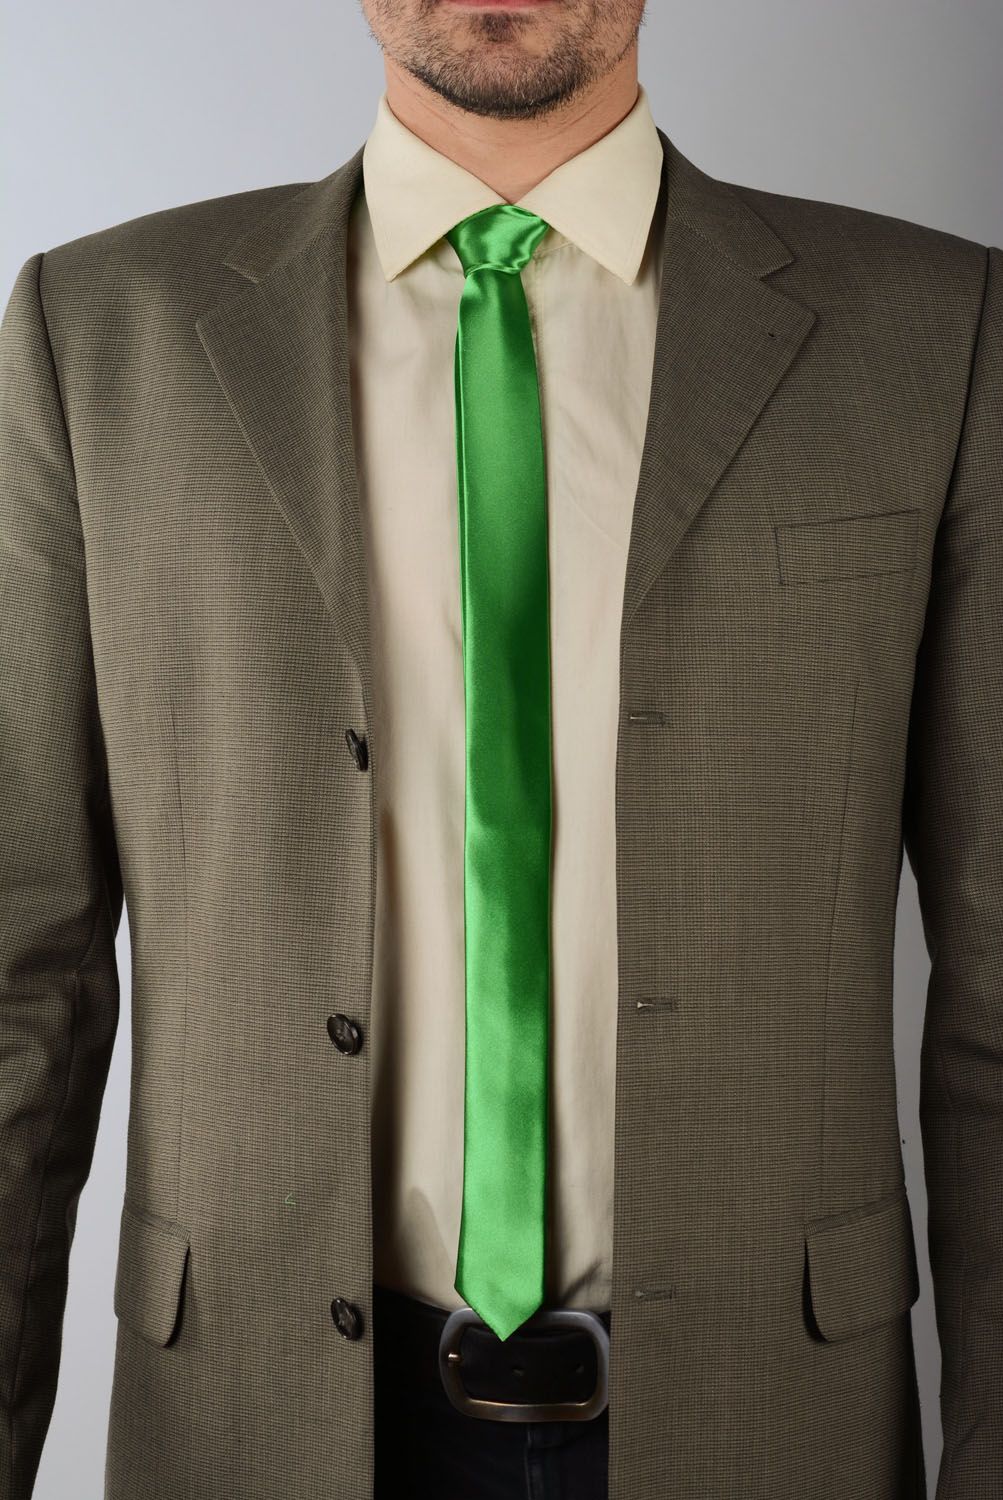 Cravate en satin verte faite main photo 1